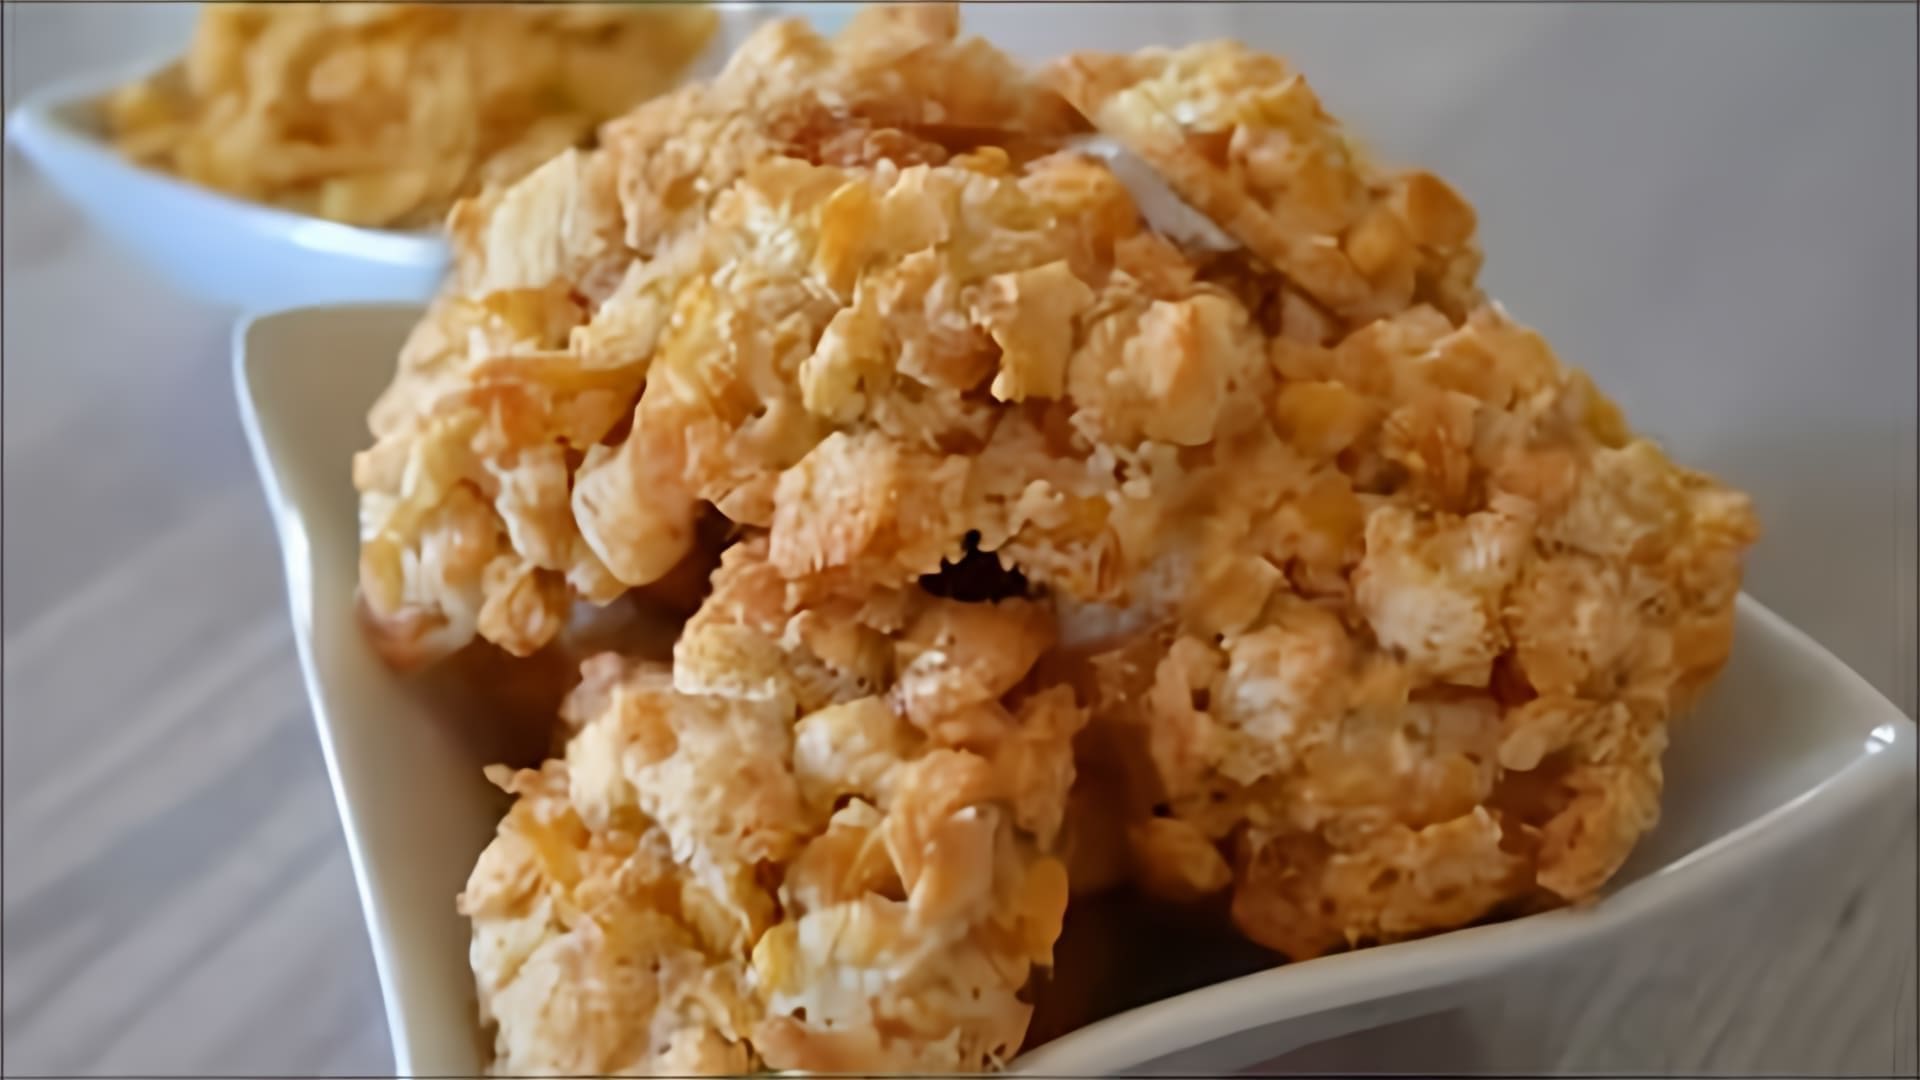 В этом видео демонстрируется простой рецепт приготовления печенья из кукурузных хлопьев